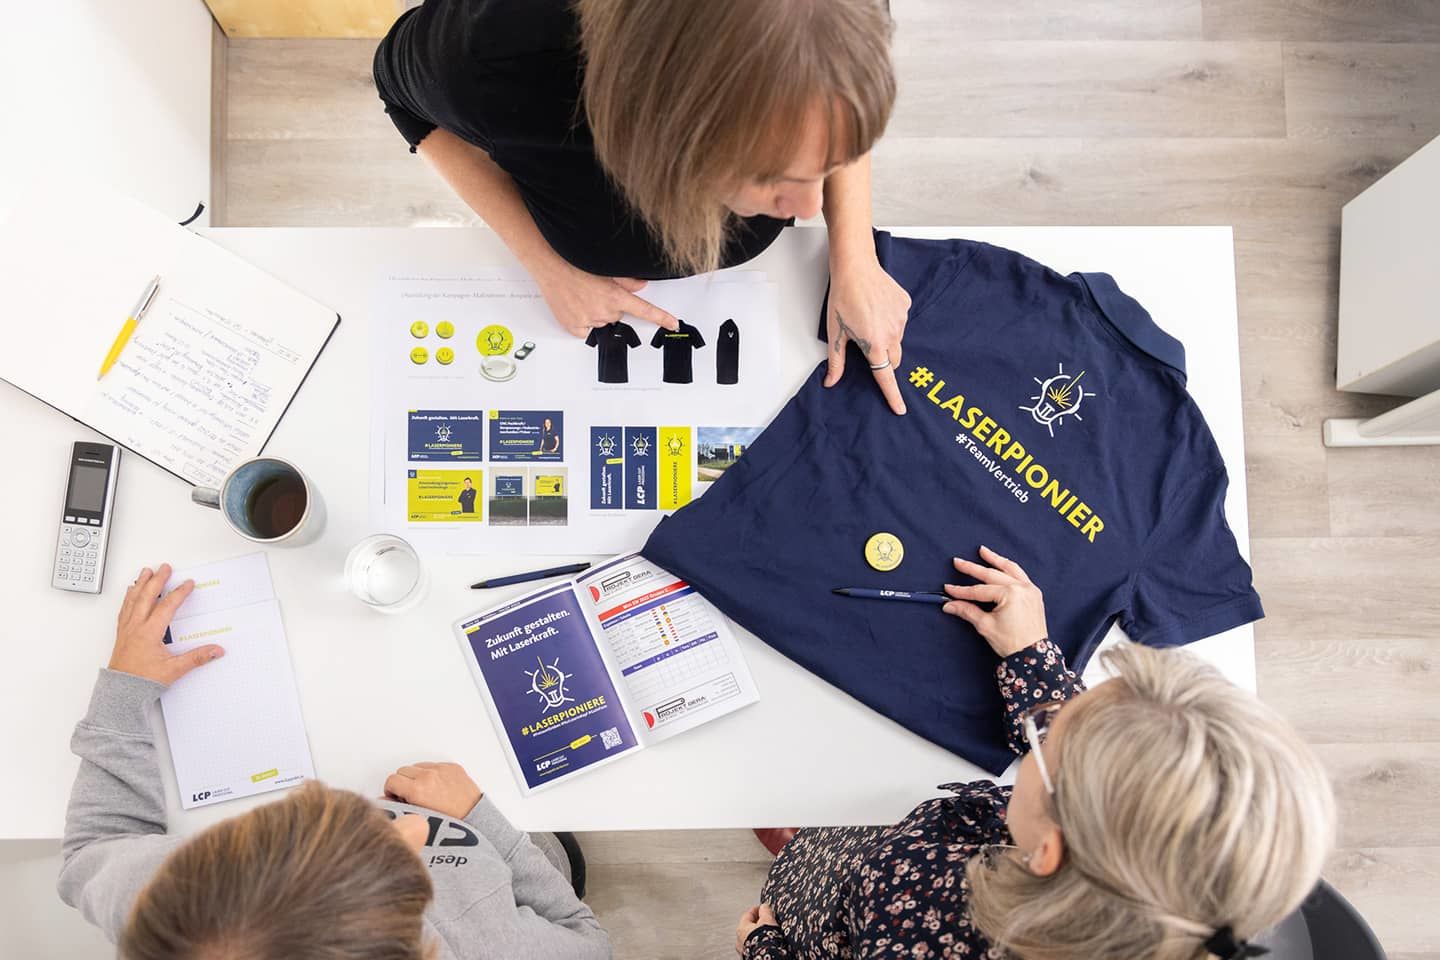 Blick von oben auf das Recruiting-Kampagnen-Design: Anzeigen, Moodboard und Mitarbeiter-T-Shirts mit gelbem Schriftzug #Laserpionier